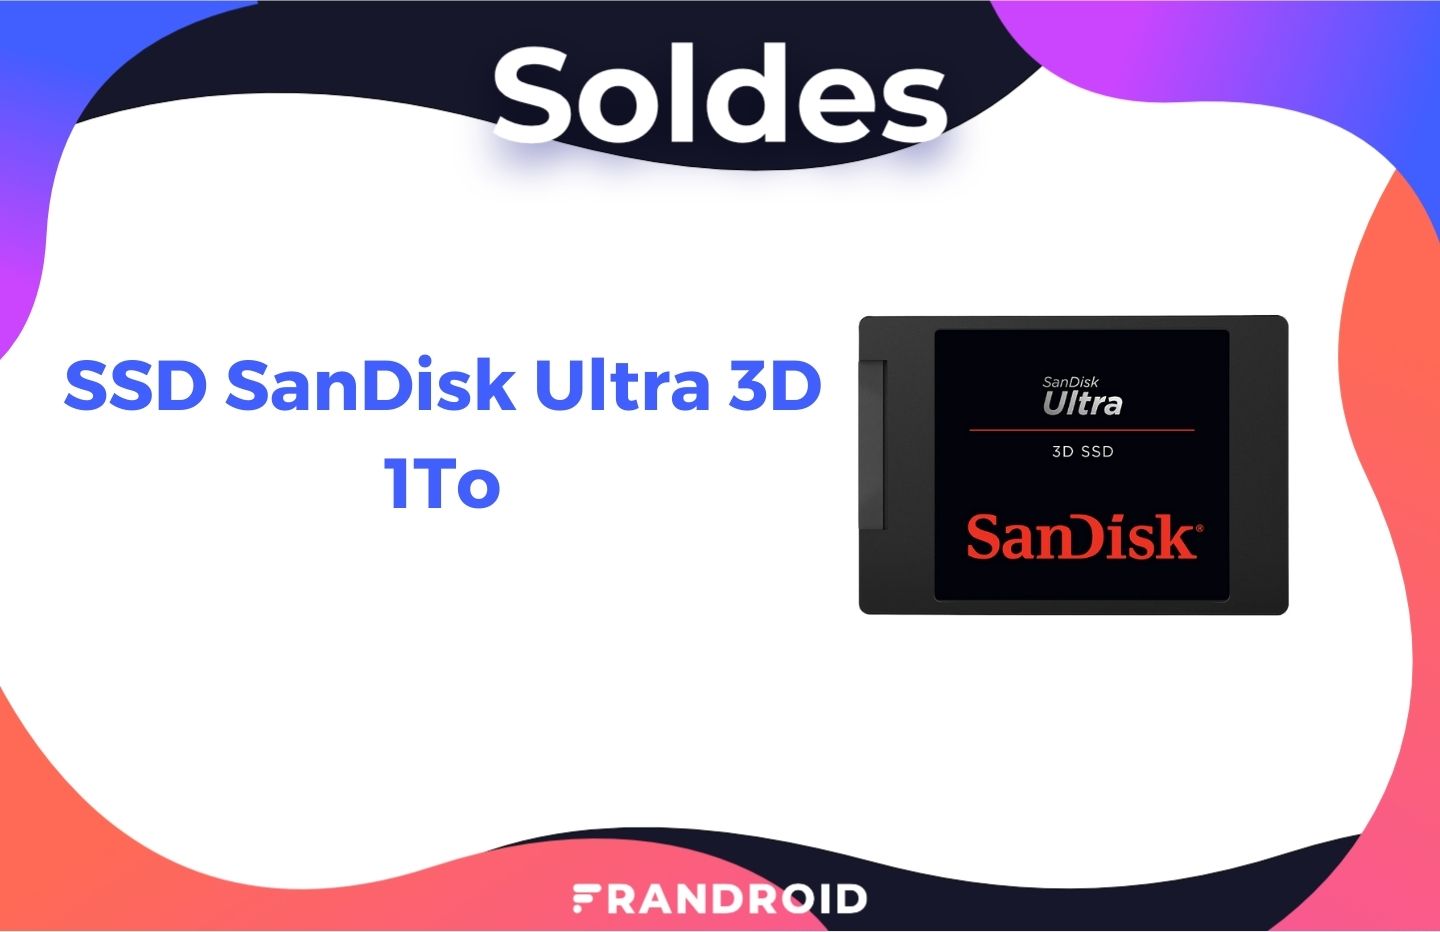 Ce SSD Sandisk de 1 To n’a jamais été aussi bon marché que maintenant